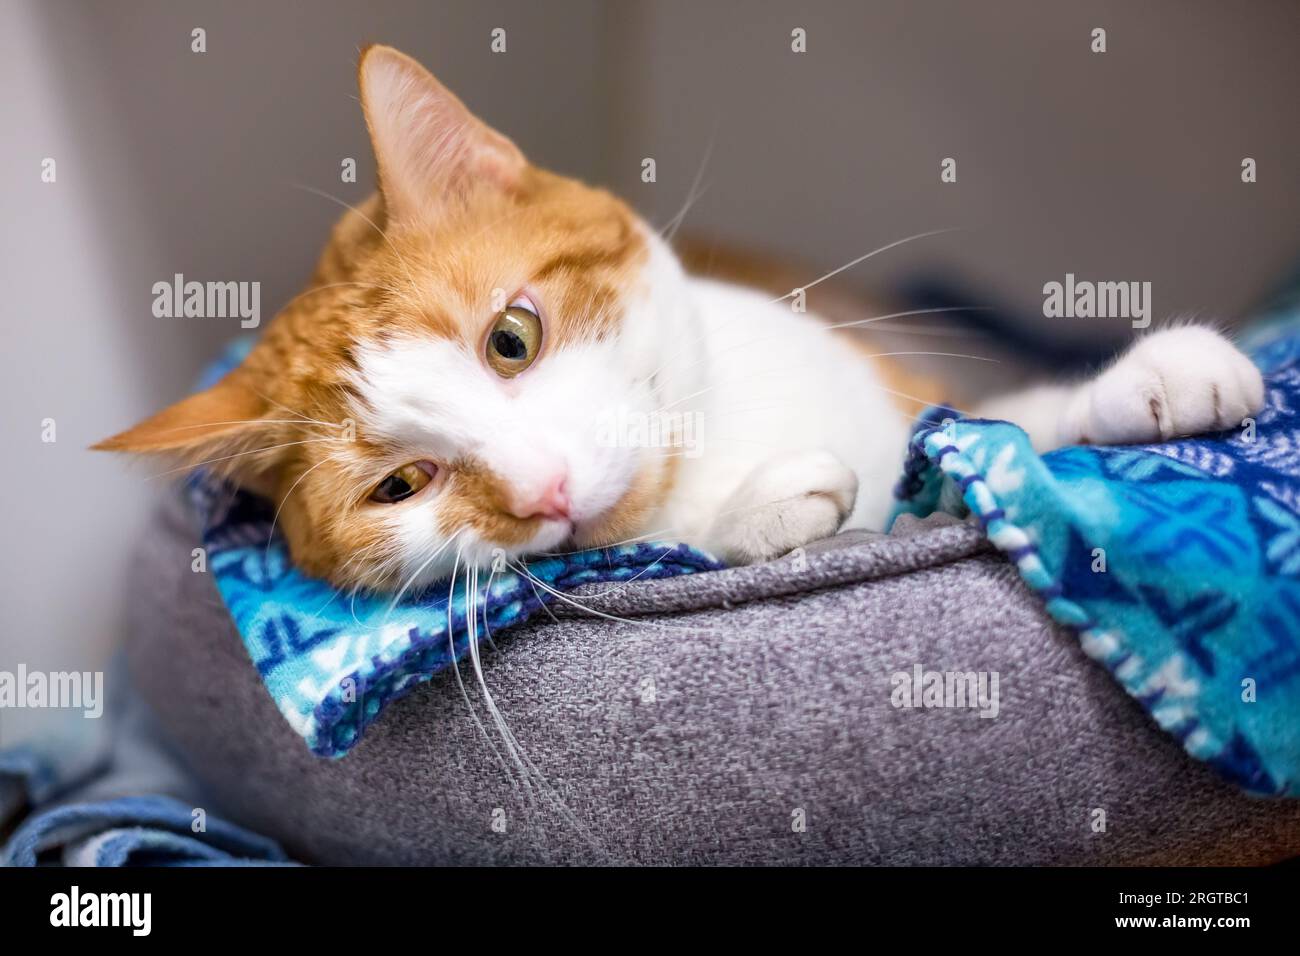 Un gatto shorthair con tabby arancione e contrassegni bianchi sdraiato in un lettino per animali domestici Foto Stock